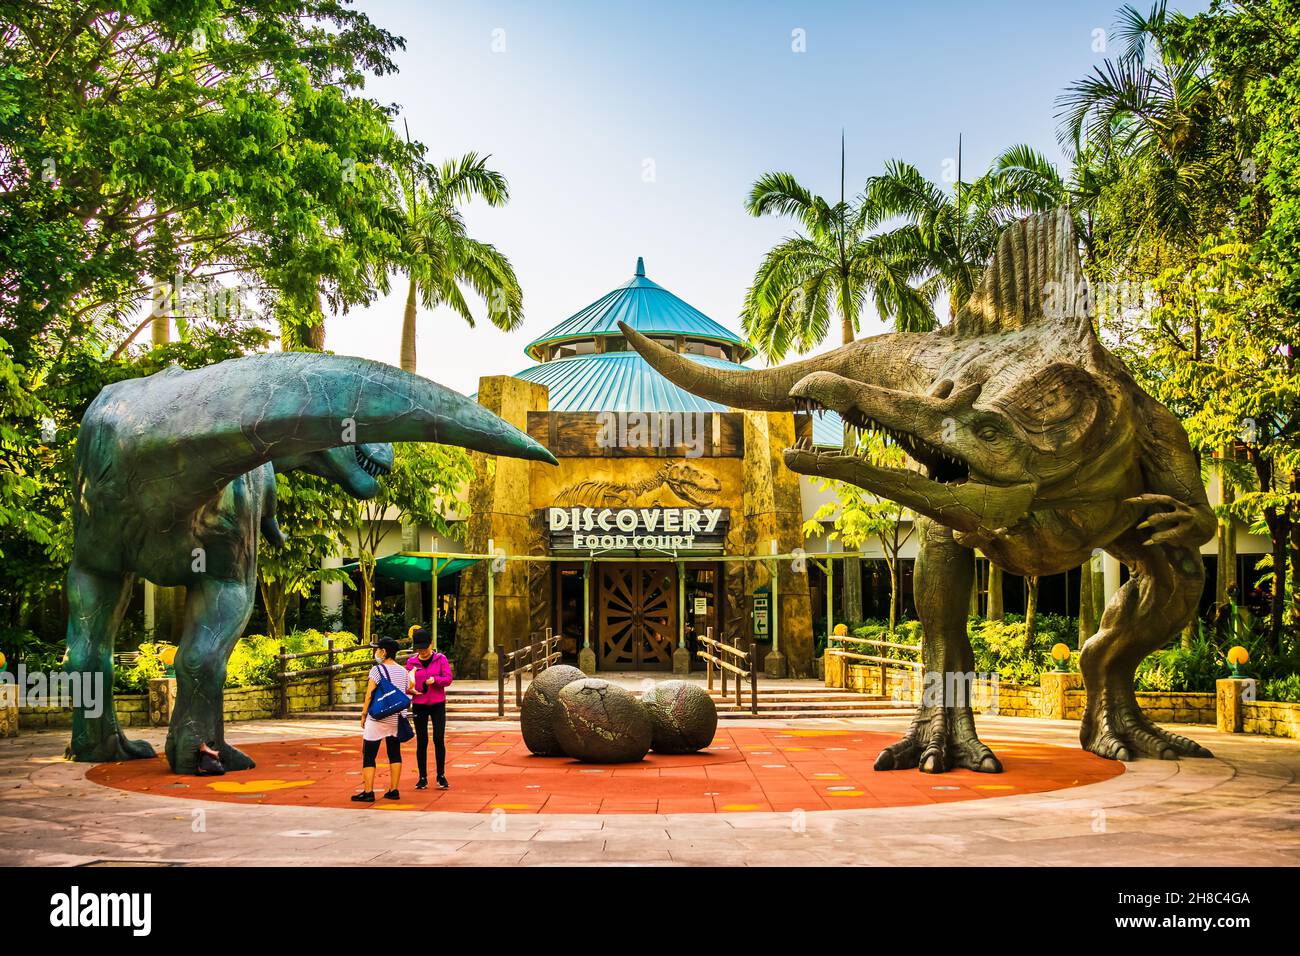 Dinosaures devant Discovery Food court à Universal Studios Singapore. Banque D'Images